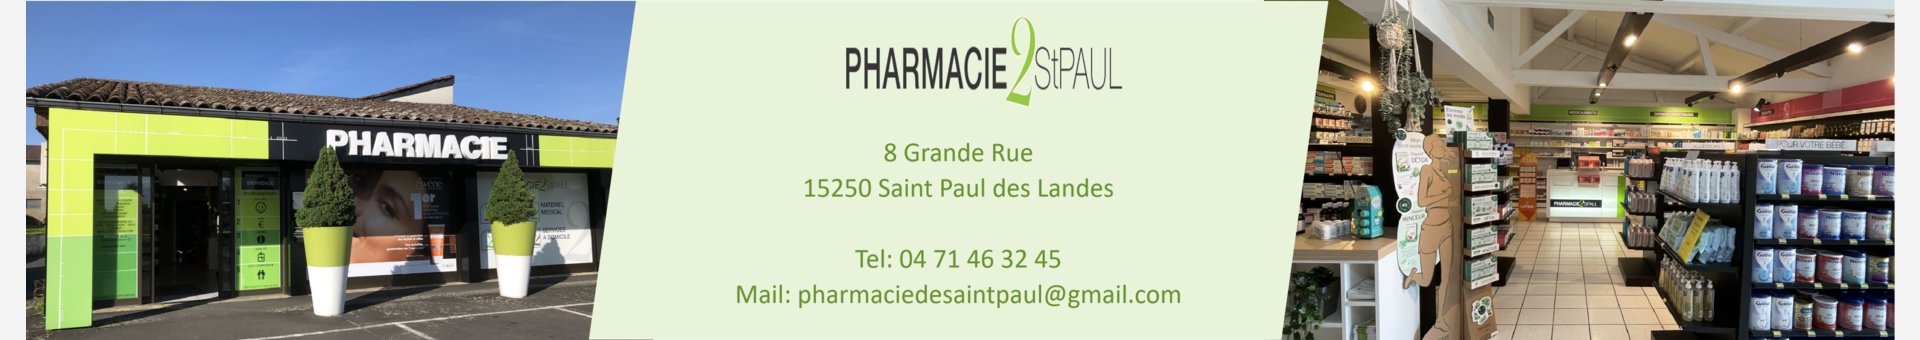 Pharmacie de Saint Paul,Saint-Paul-des-Landes